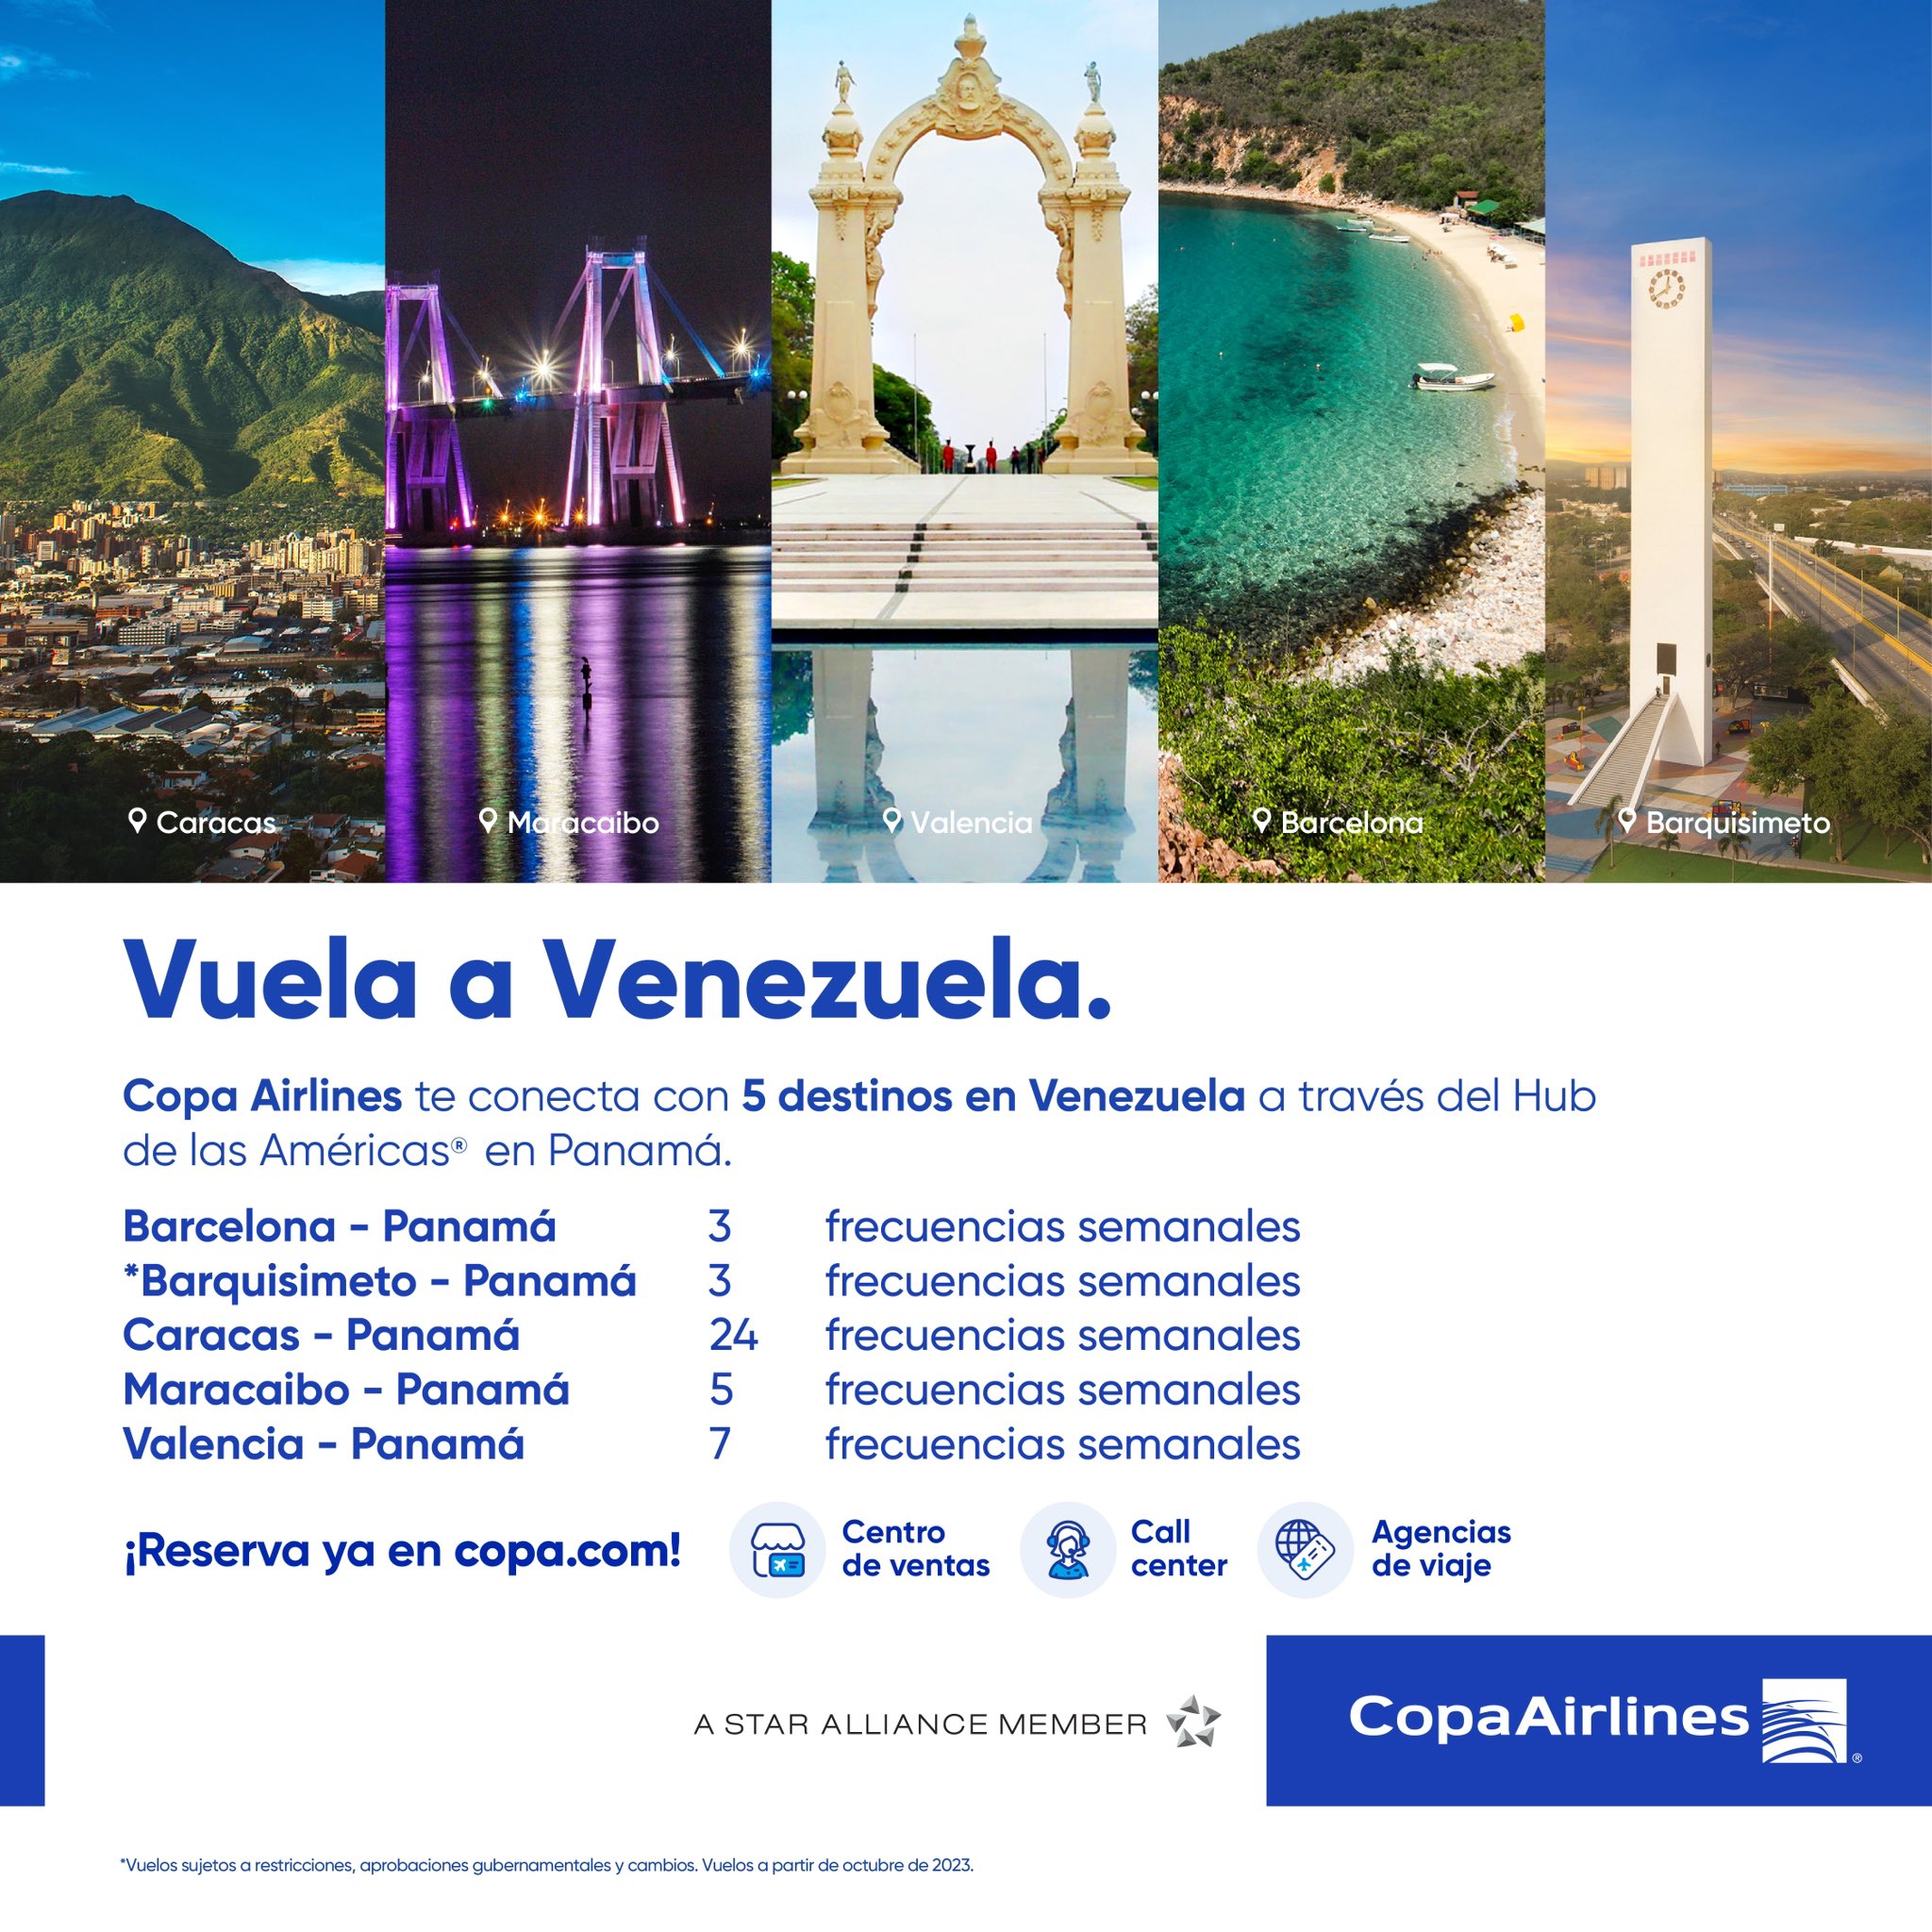 Copa Airlines tendrá 42 frecuencias de vuelos semanales entre Panamá y Venezuela